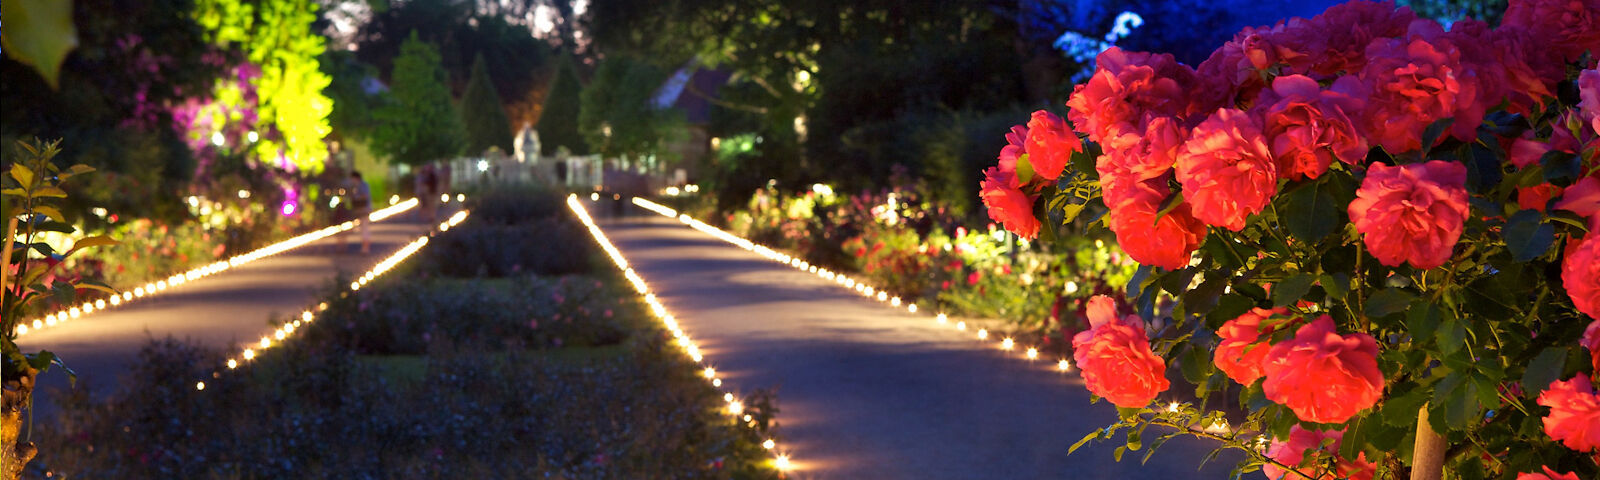 Rosengarten im dunkeln, Hochstammrose im Vordergrund, im Hintergrund sind die Parkwege mit Teelichtern umrandet